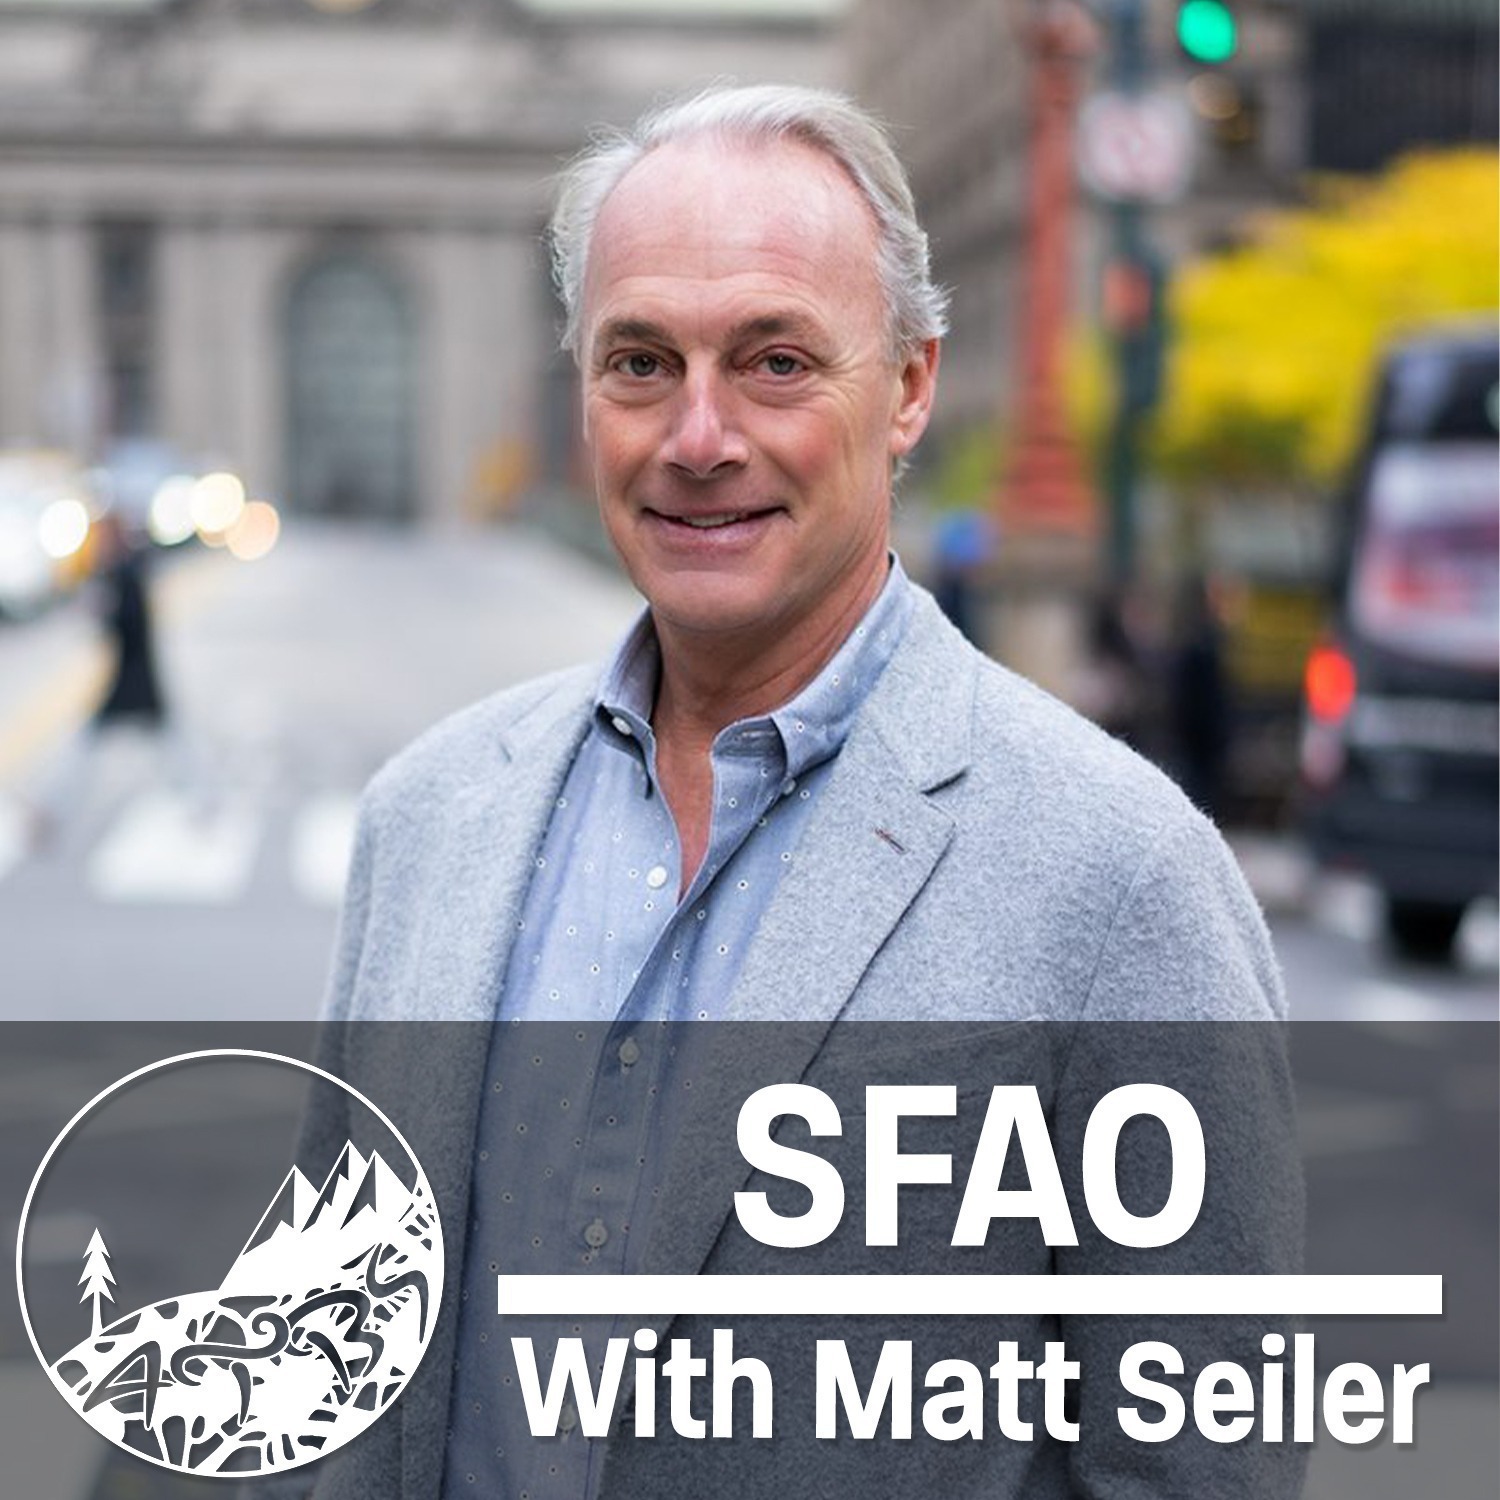 #4 - SFAO - Situation Fluid, Agenda Open - With Matt Seiler